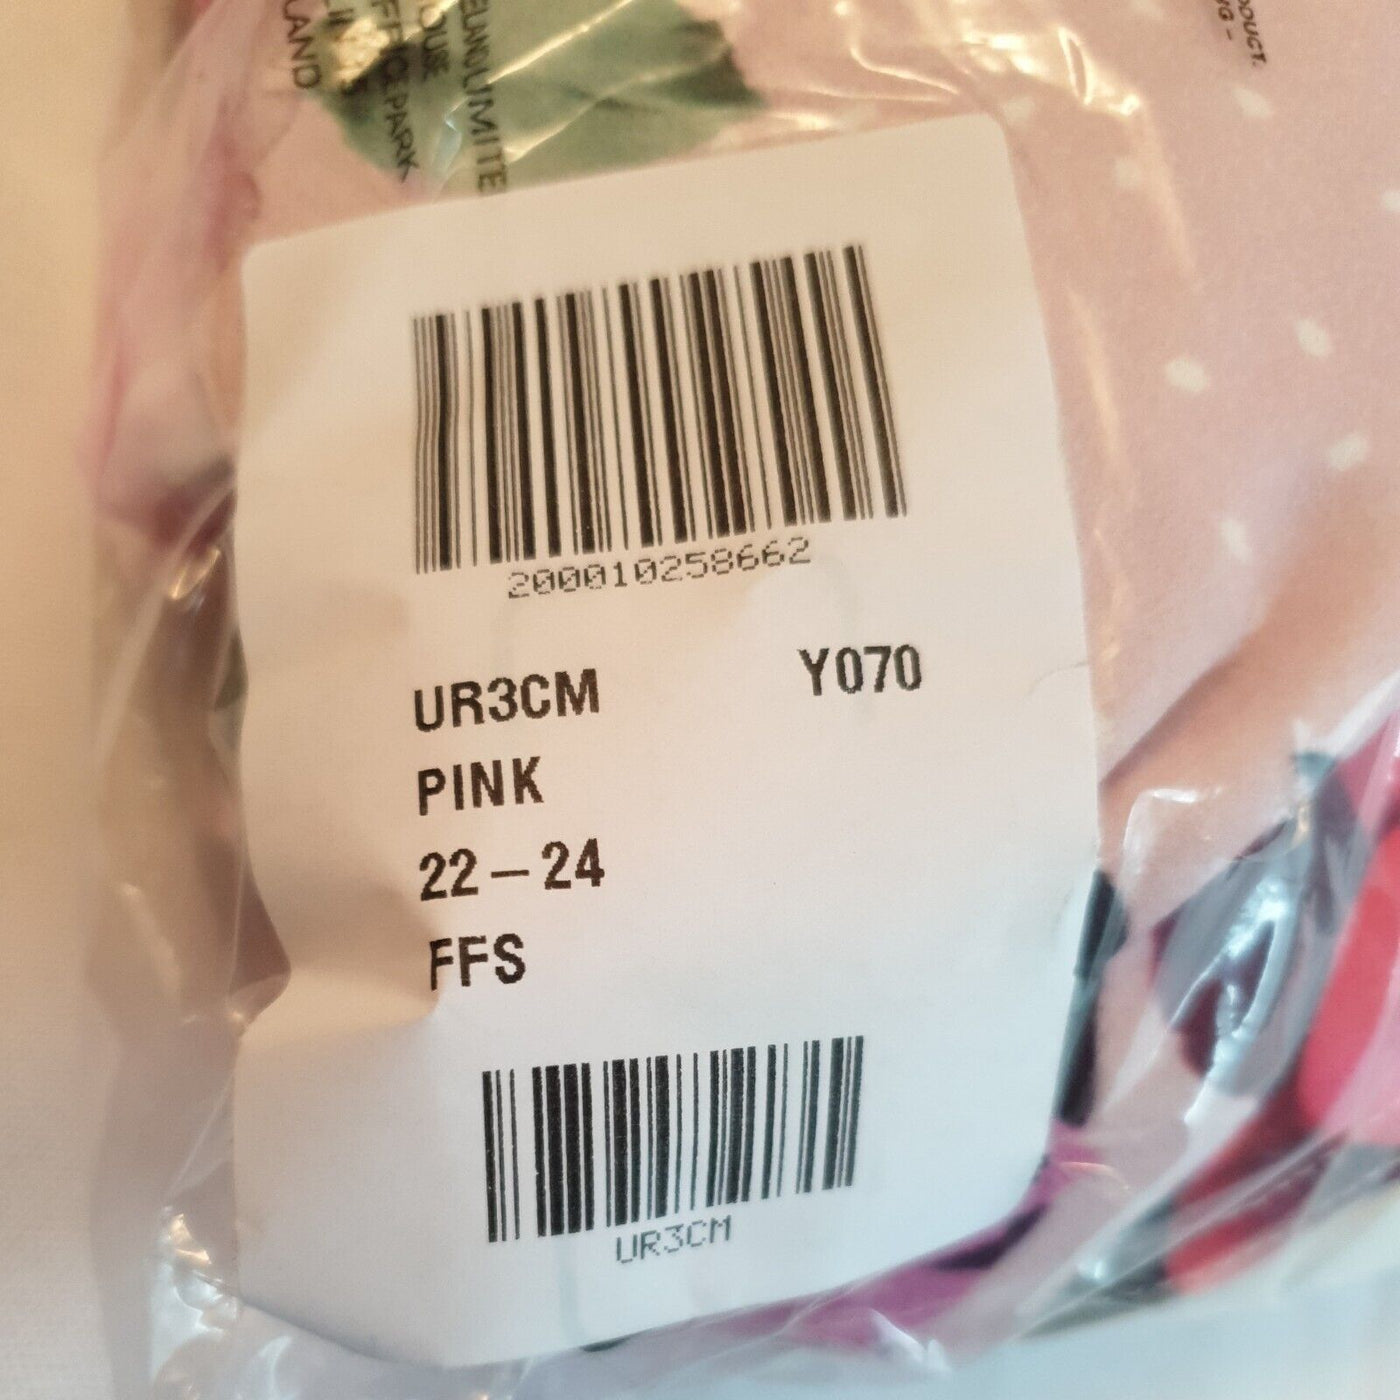 Yours London Pink Floral Print Skater Dress Size 22-24****Ref V66